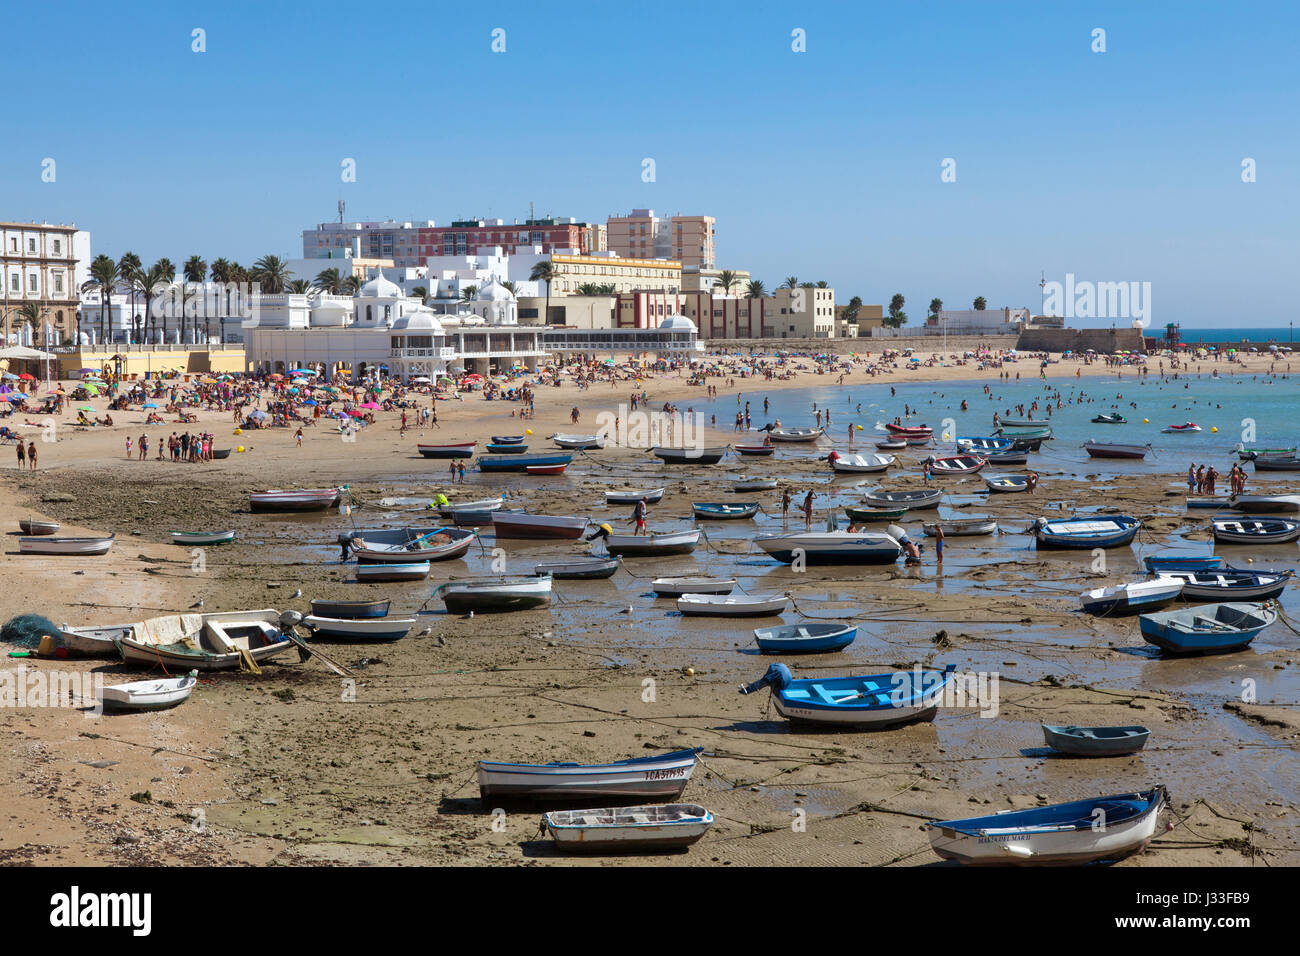 La Caleta Beach in the historical town of Cadiz, Cadiz Province, Costa de la Luz, Andalusia, Spain, Europe Stock Photo